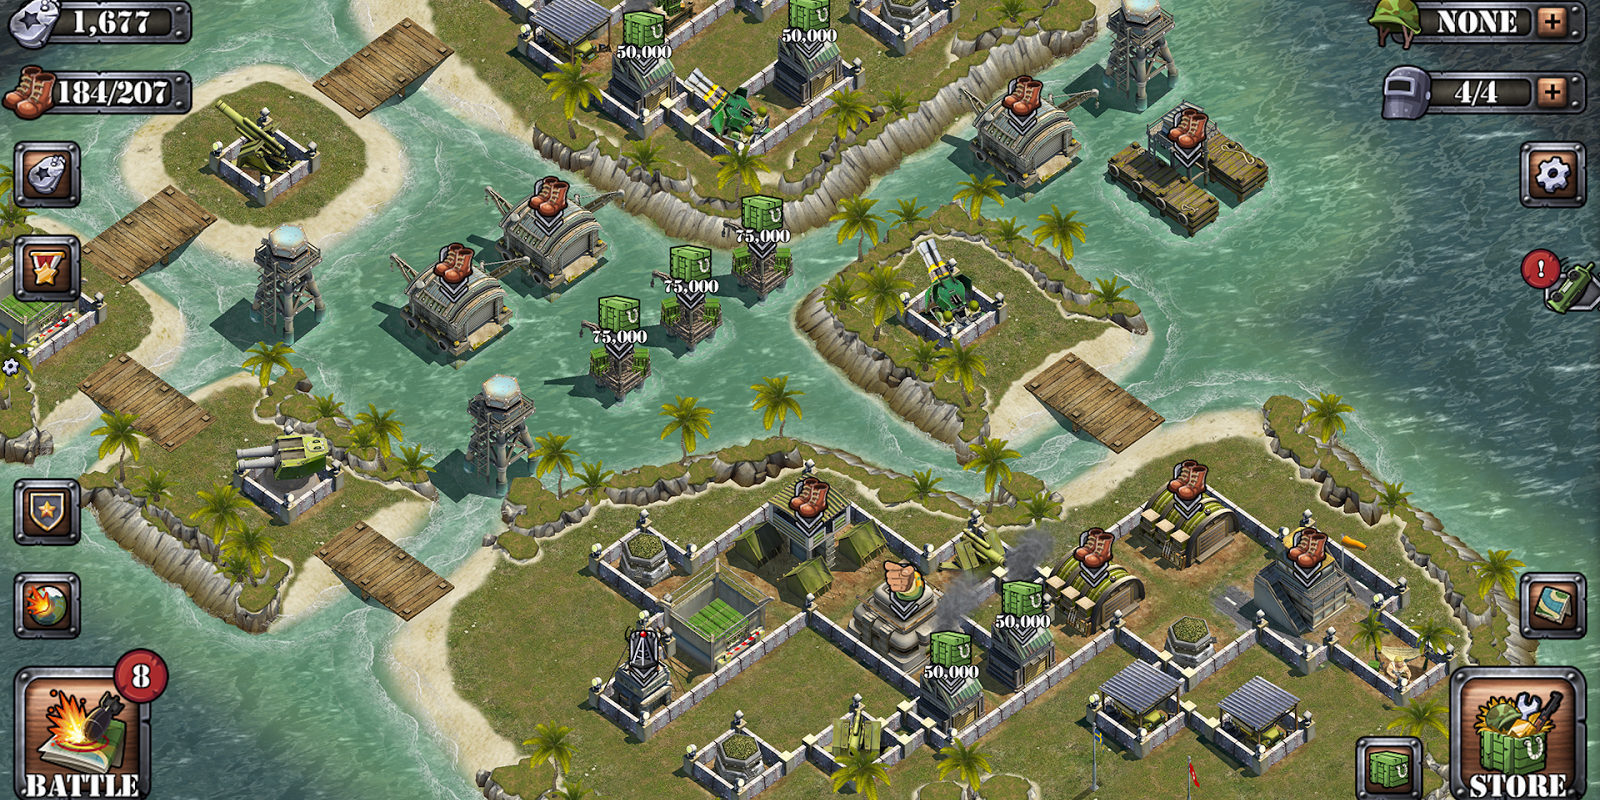 Quagga atlántico prometedor Battle Islands: todo sobre el juego, en Zonared